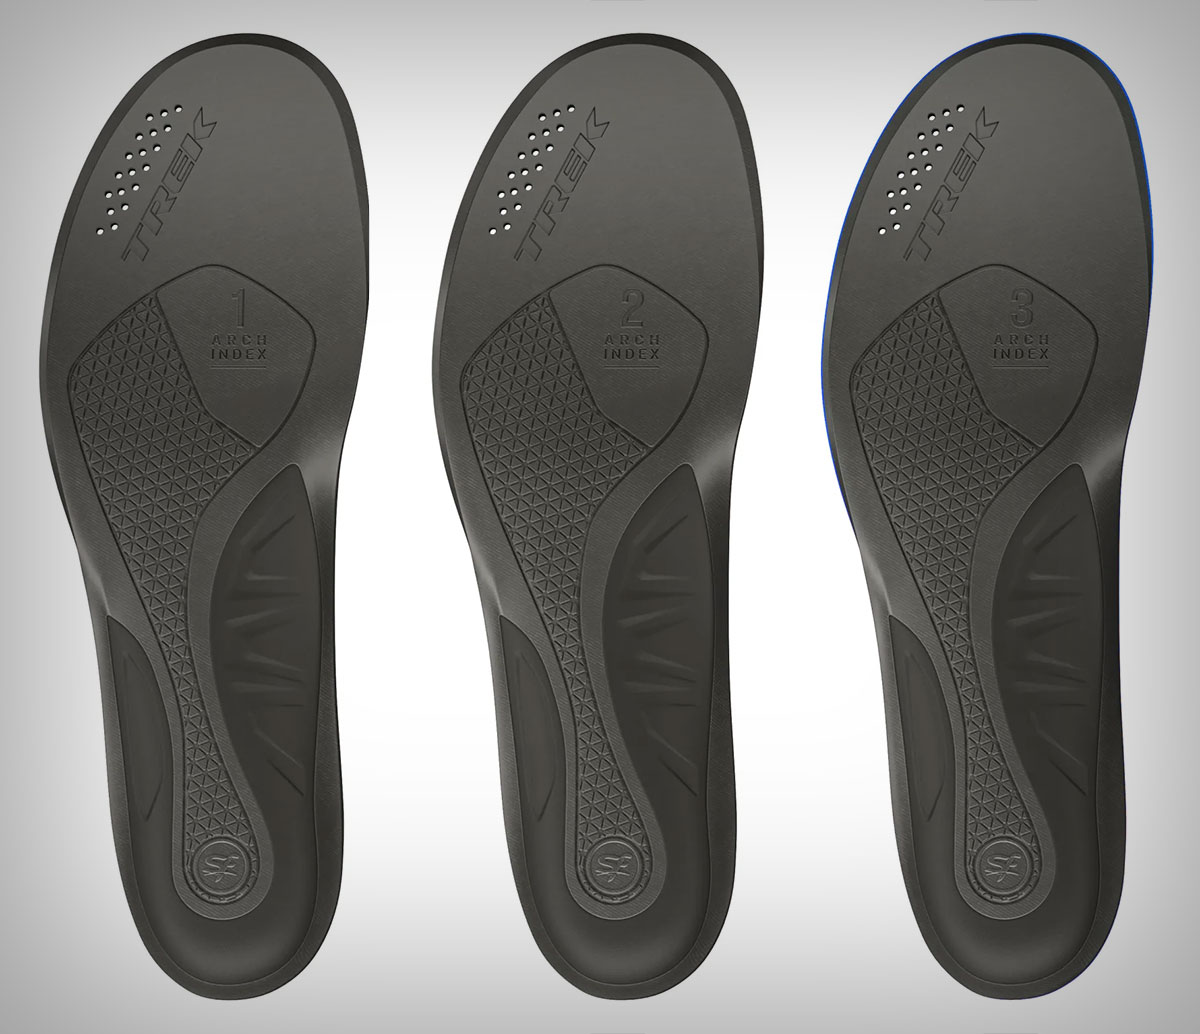 Plantillas Trek BioDynamic, diseñadas para ofrecer una sujeción completa del pie y un ajuste preciso en cualquier zapatilla